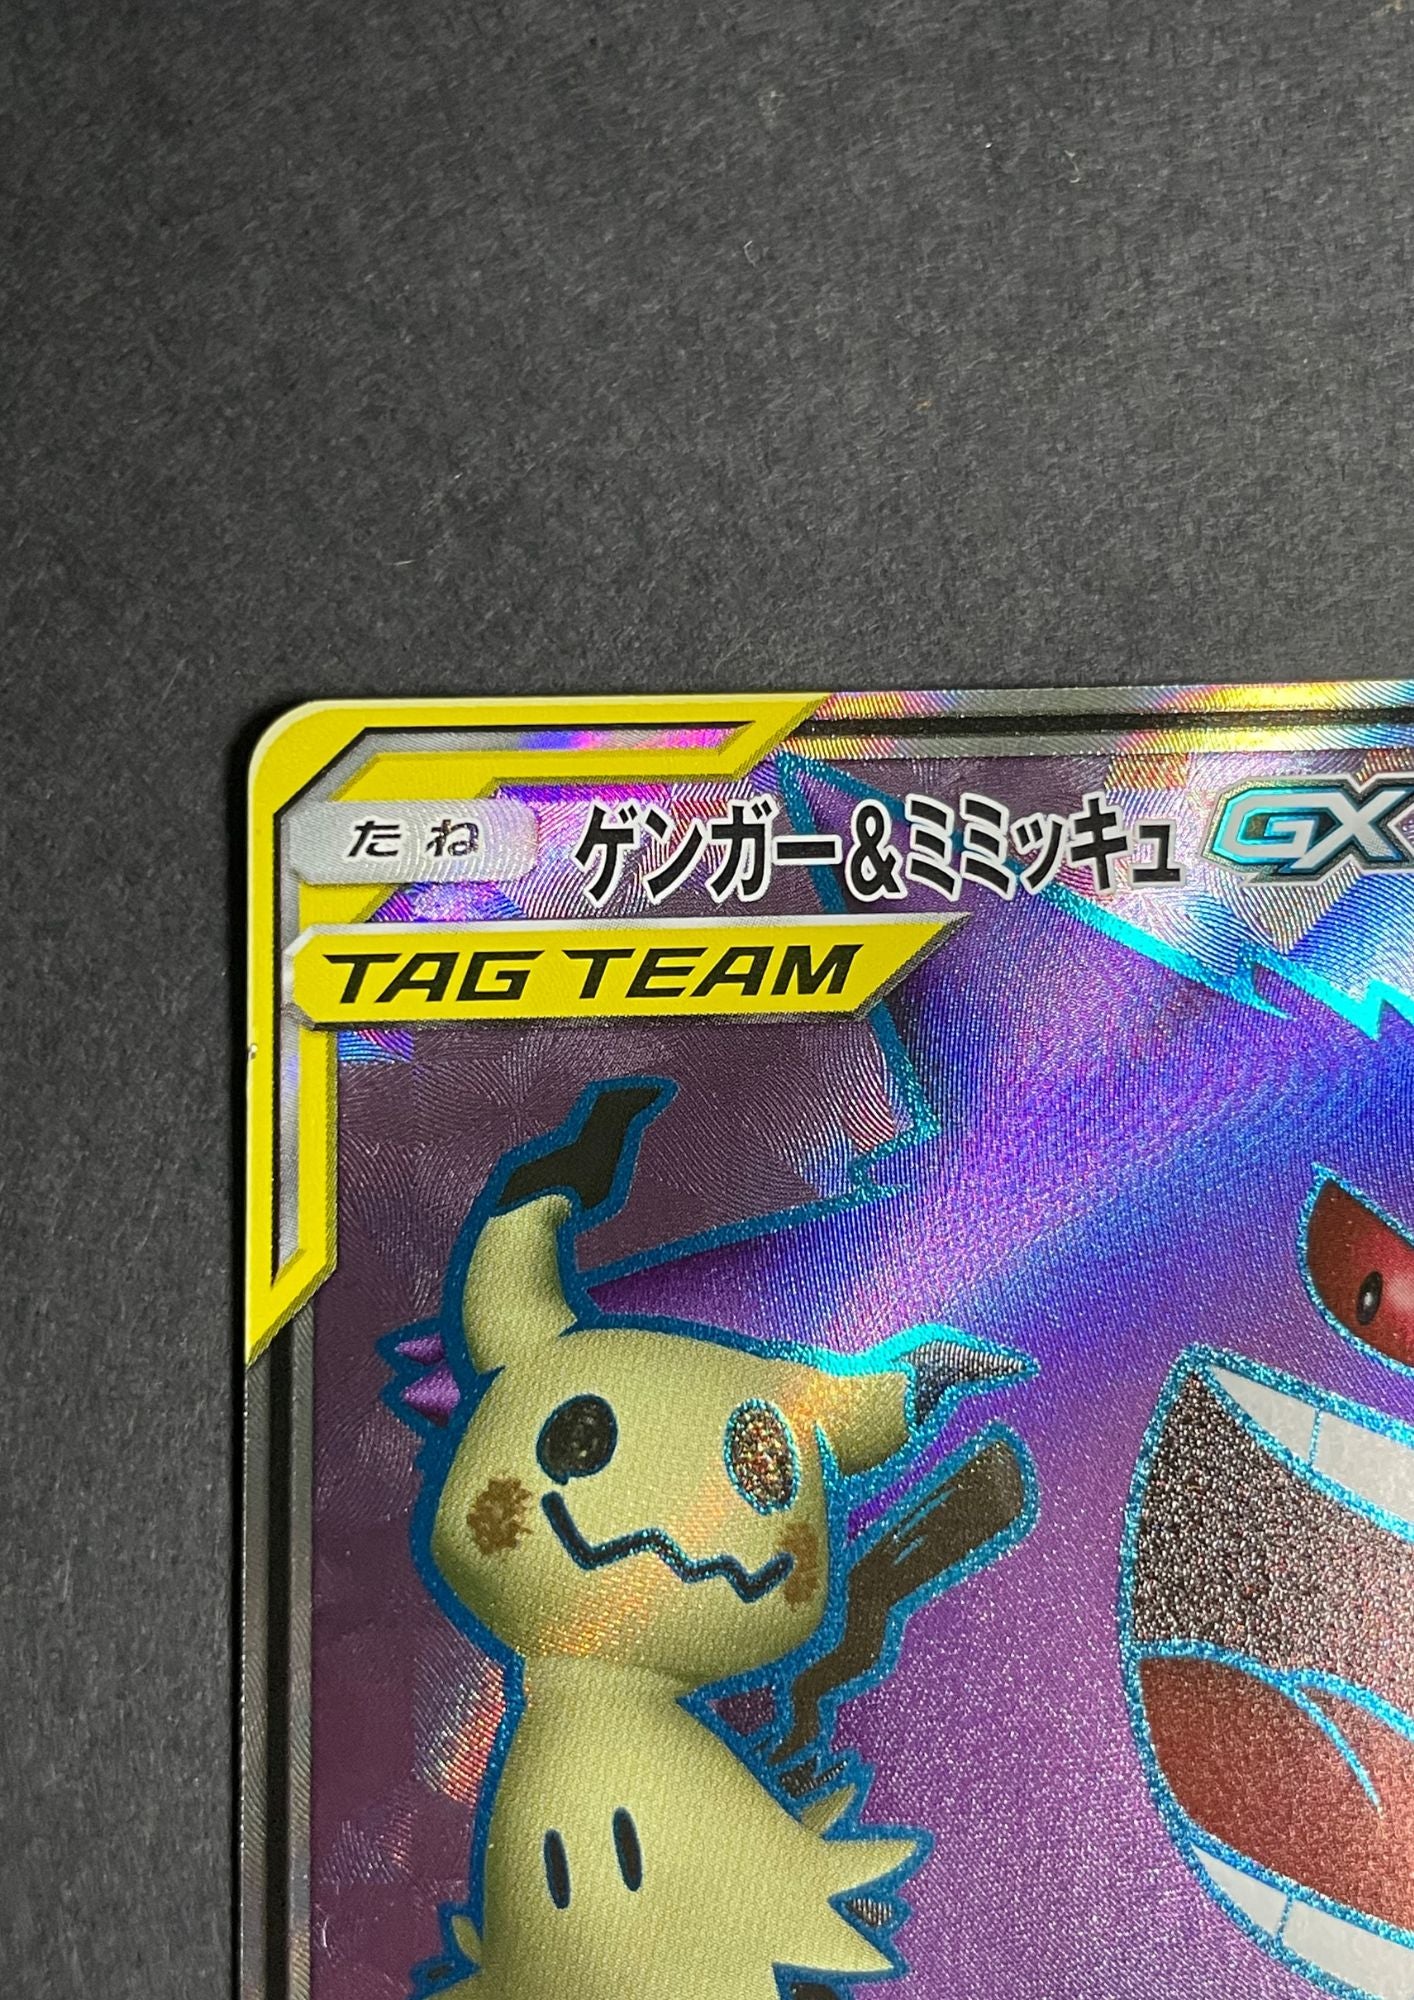 Pokémon Card Game PROMO Gengar